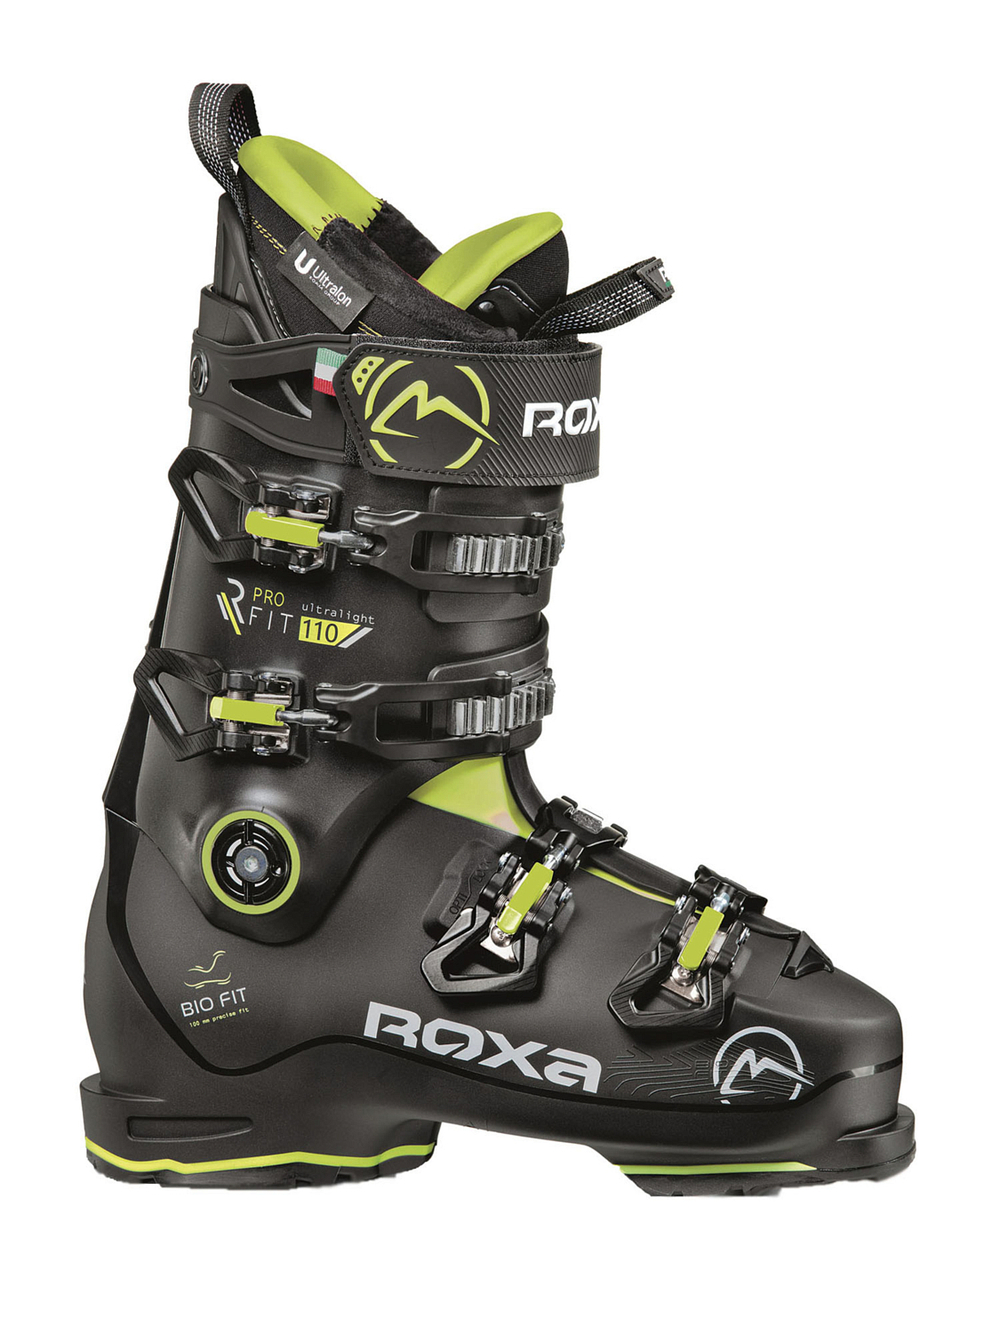 Горнолыжные ботинки ROXA Rfit Pro 110 Gw Black/Acid (см:26,5)